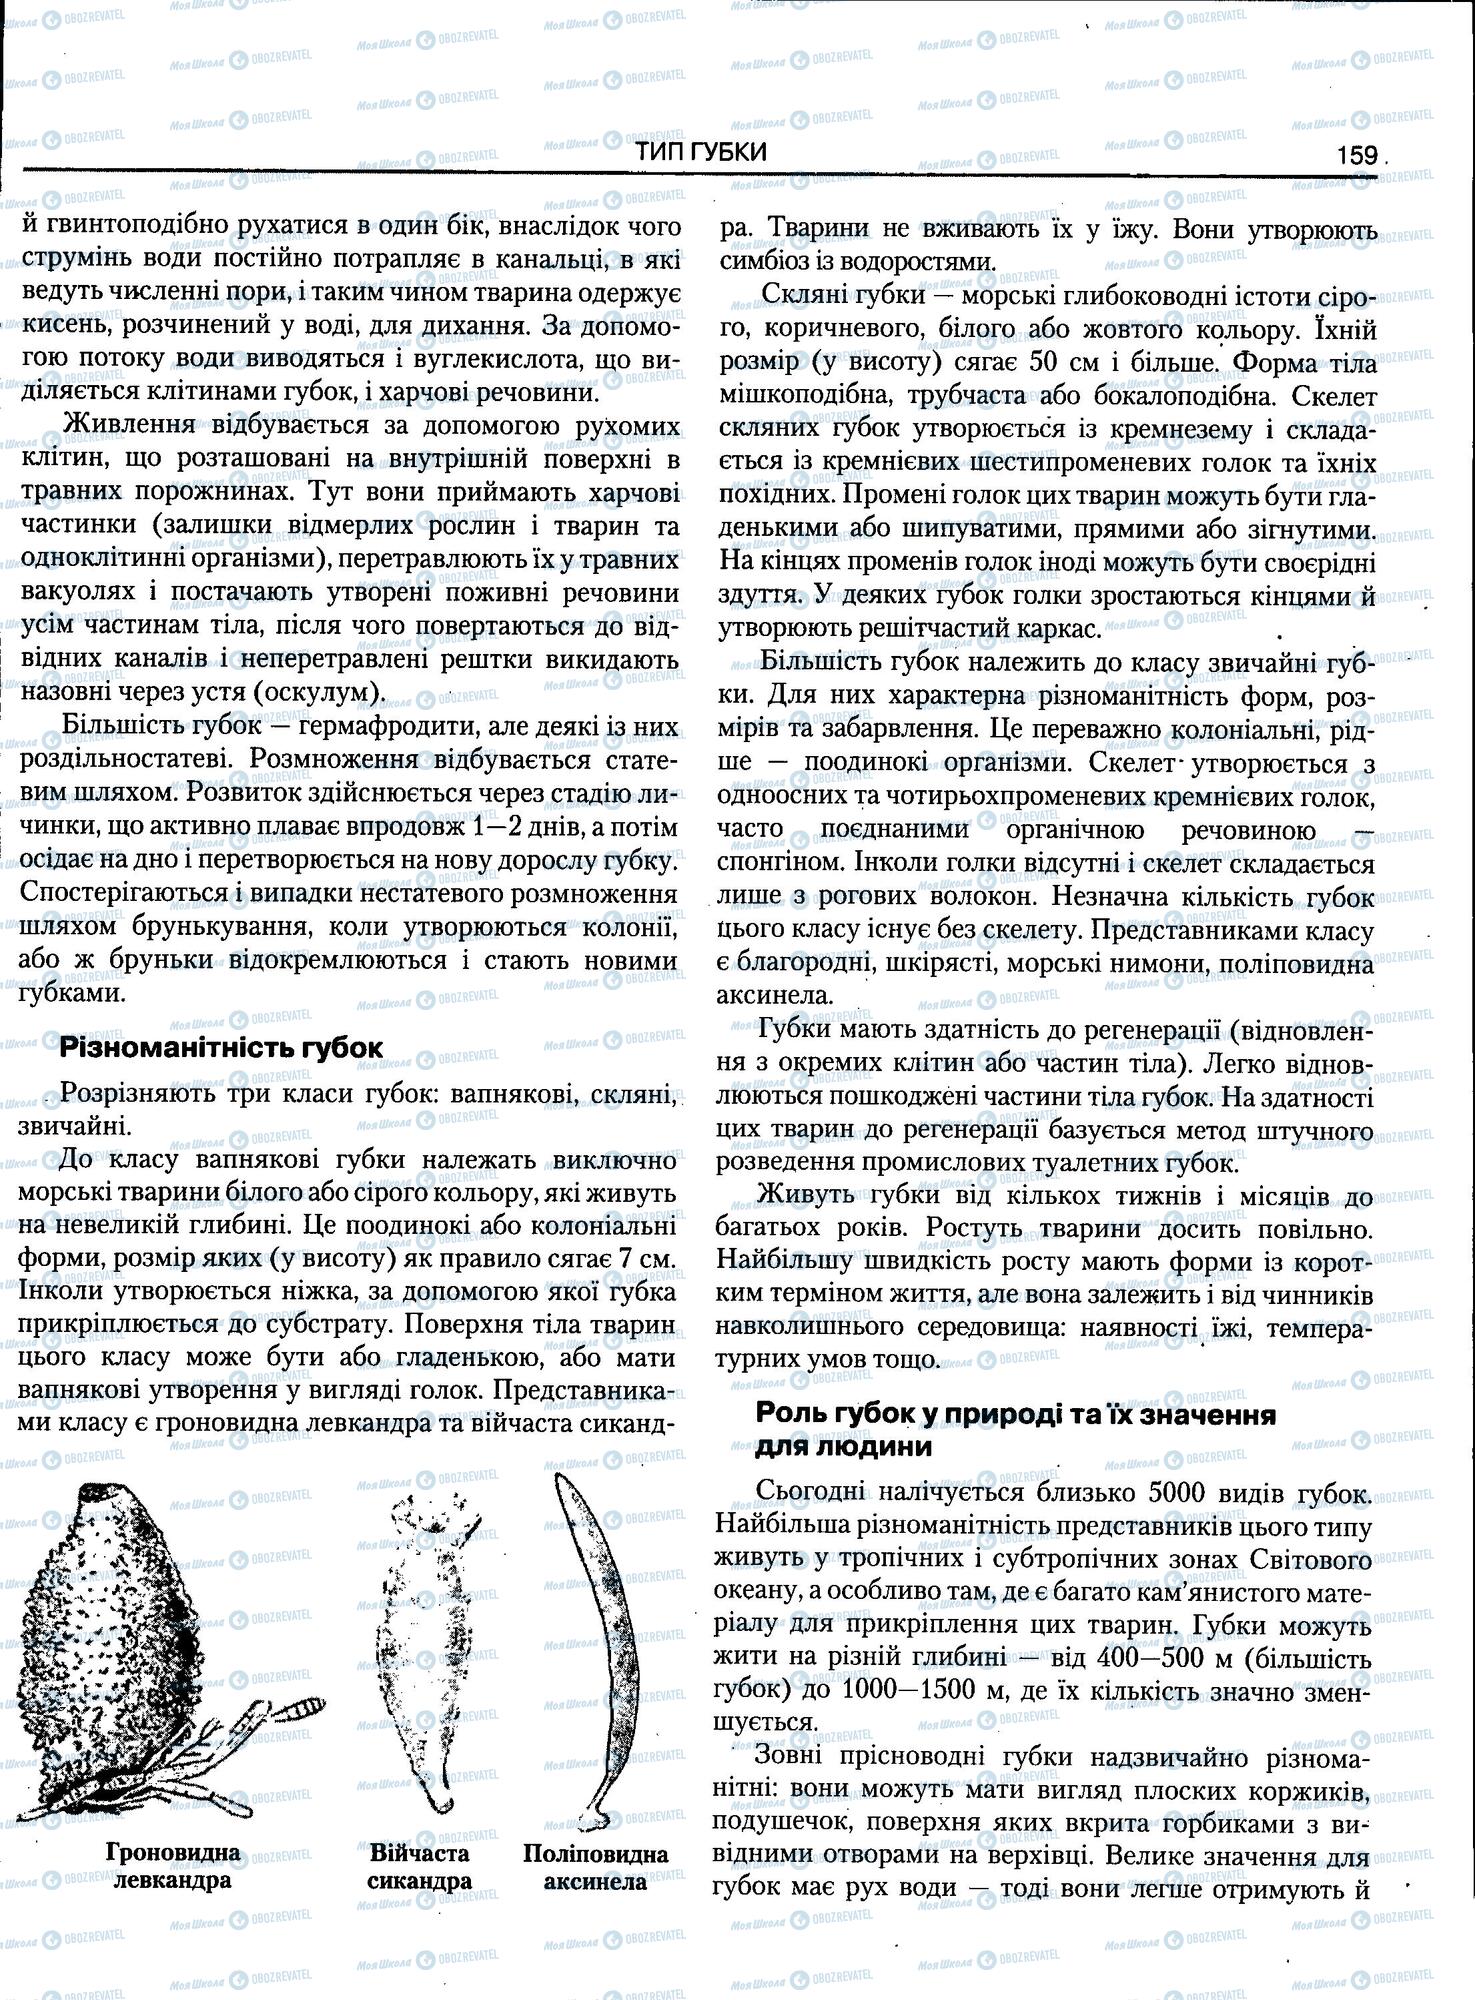 ЗНО Биология 11 класс страница 159